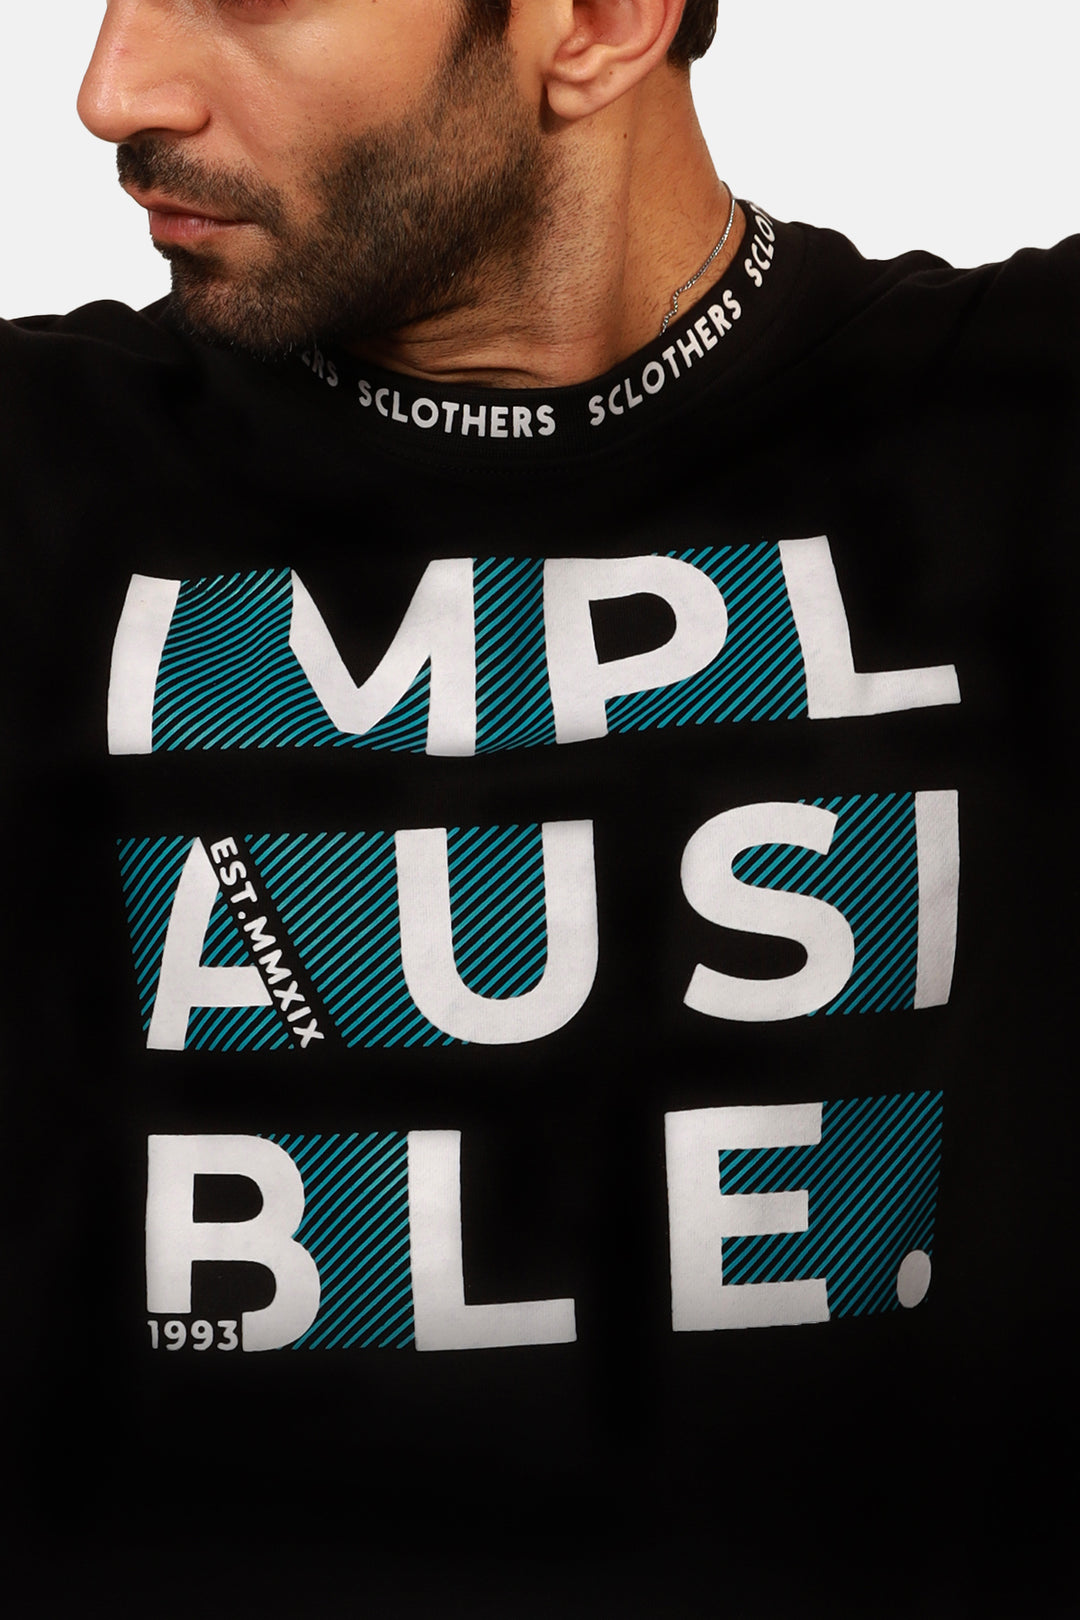 Men's Graphic Implausible Graphic Sweatshirt Online in Pakistan